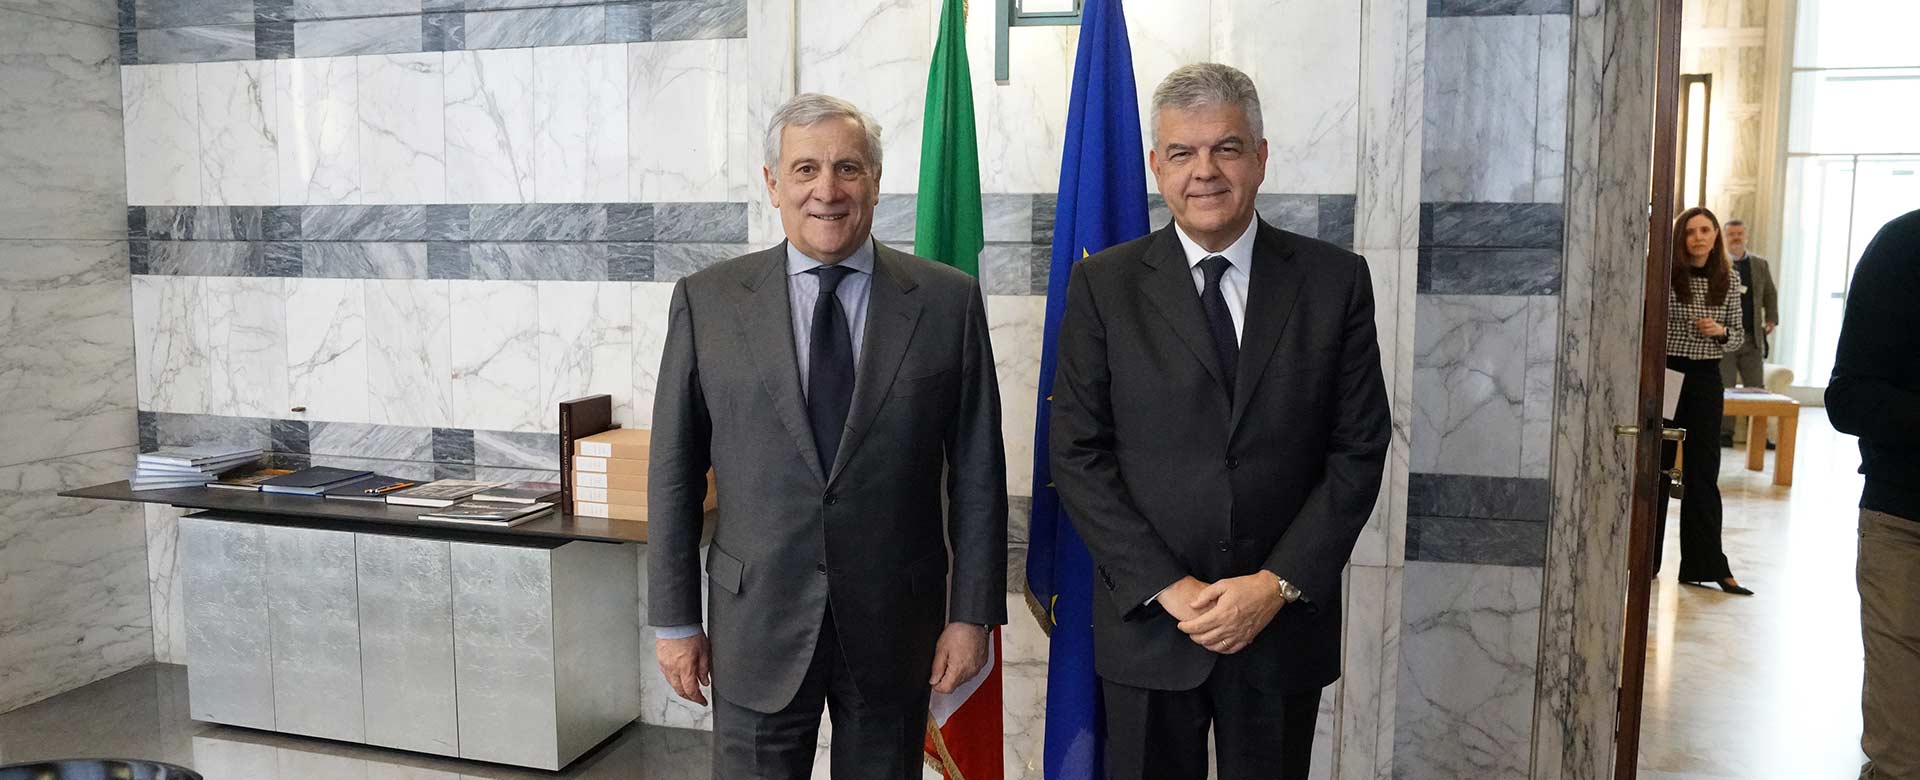 L'AD del Gruppo FS Luigi Ferraris e il Ministro Antonio Tajani alla Farnesina